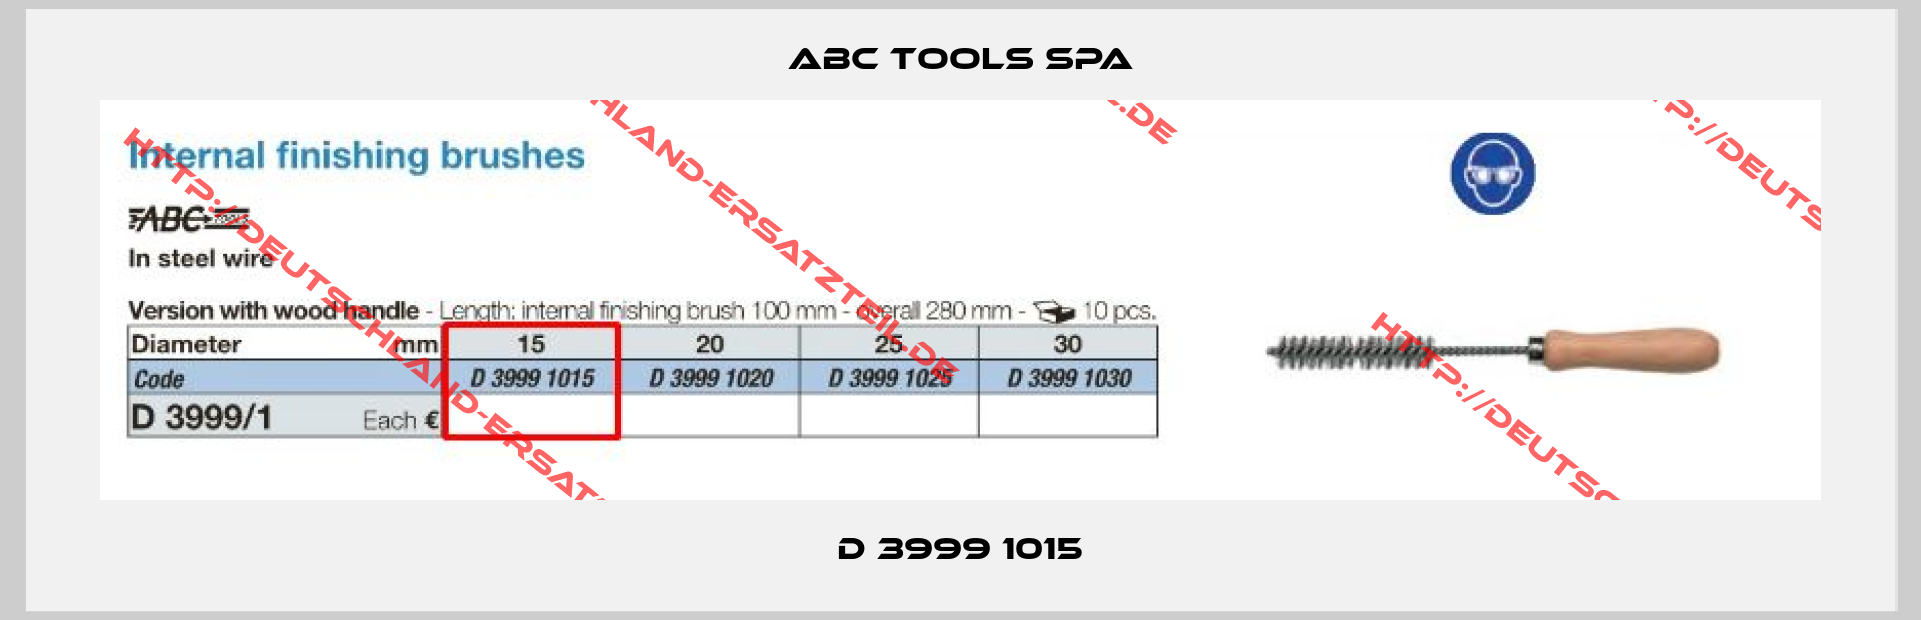 ABC TOOLS SPA-D 3999 1015